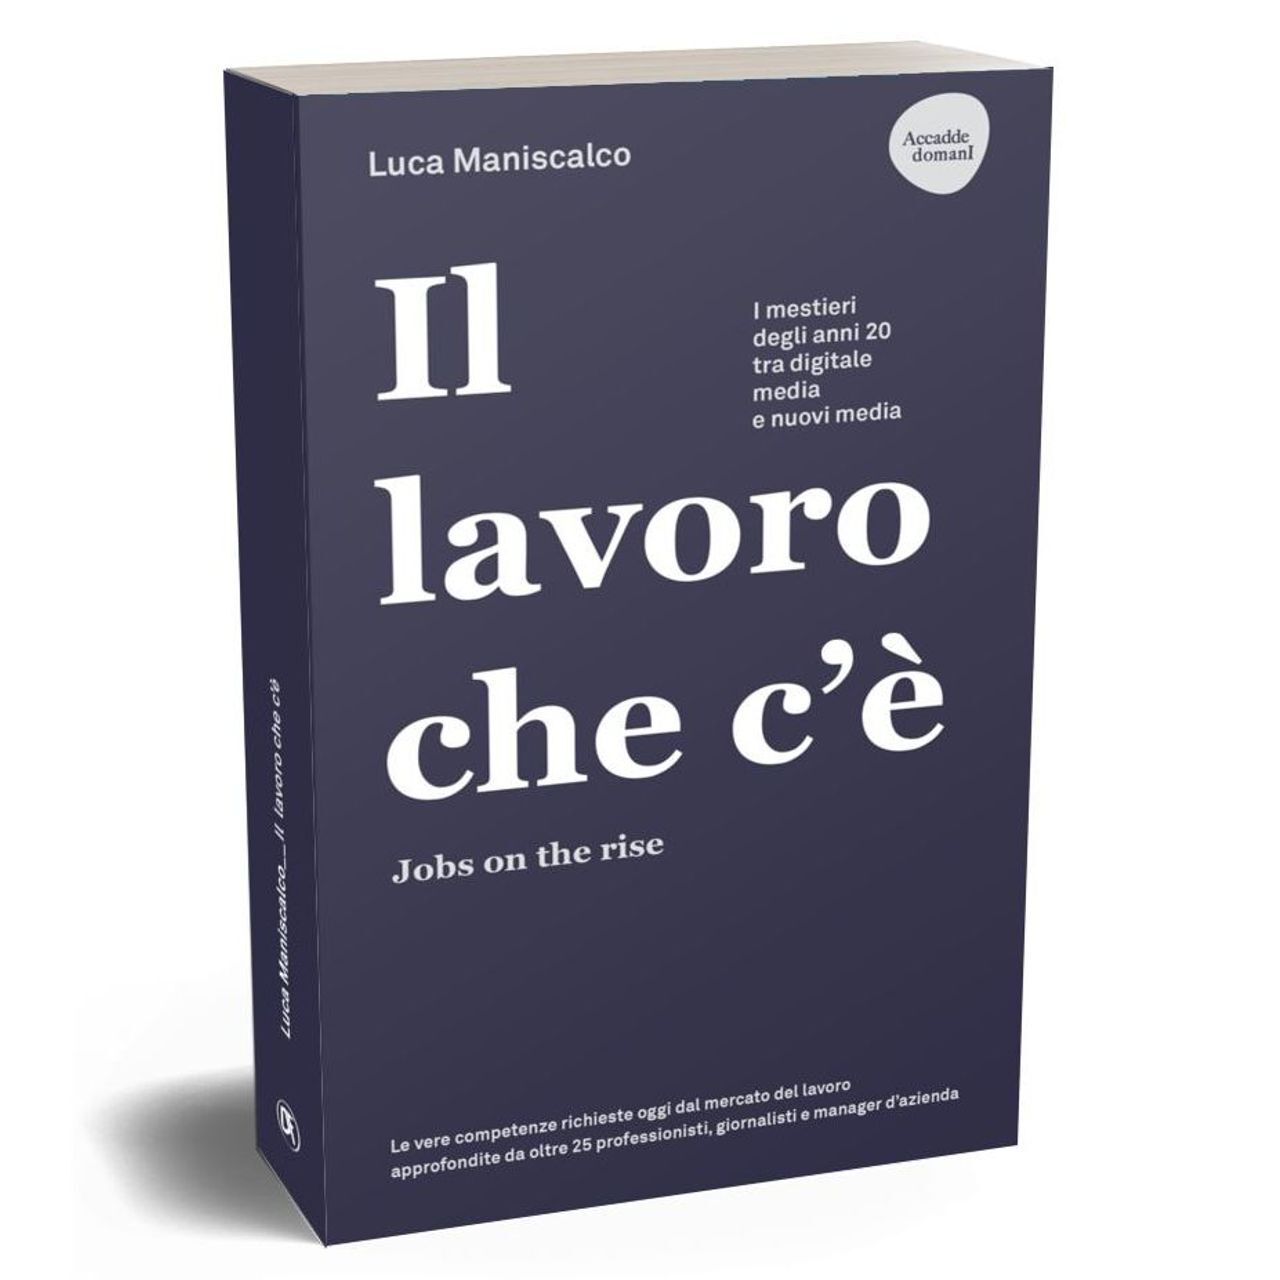 Capa do livro “A obra que existe. Empregos em alta” de Luca Maniscalco, publicado por Dario Flaccovio Editore